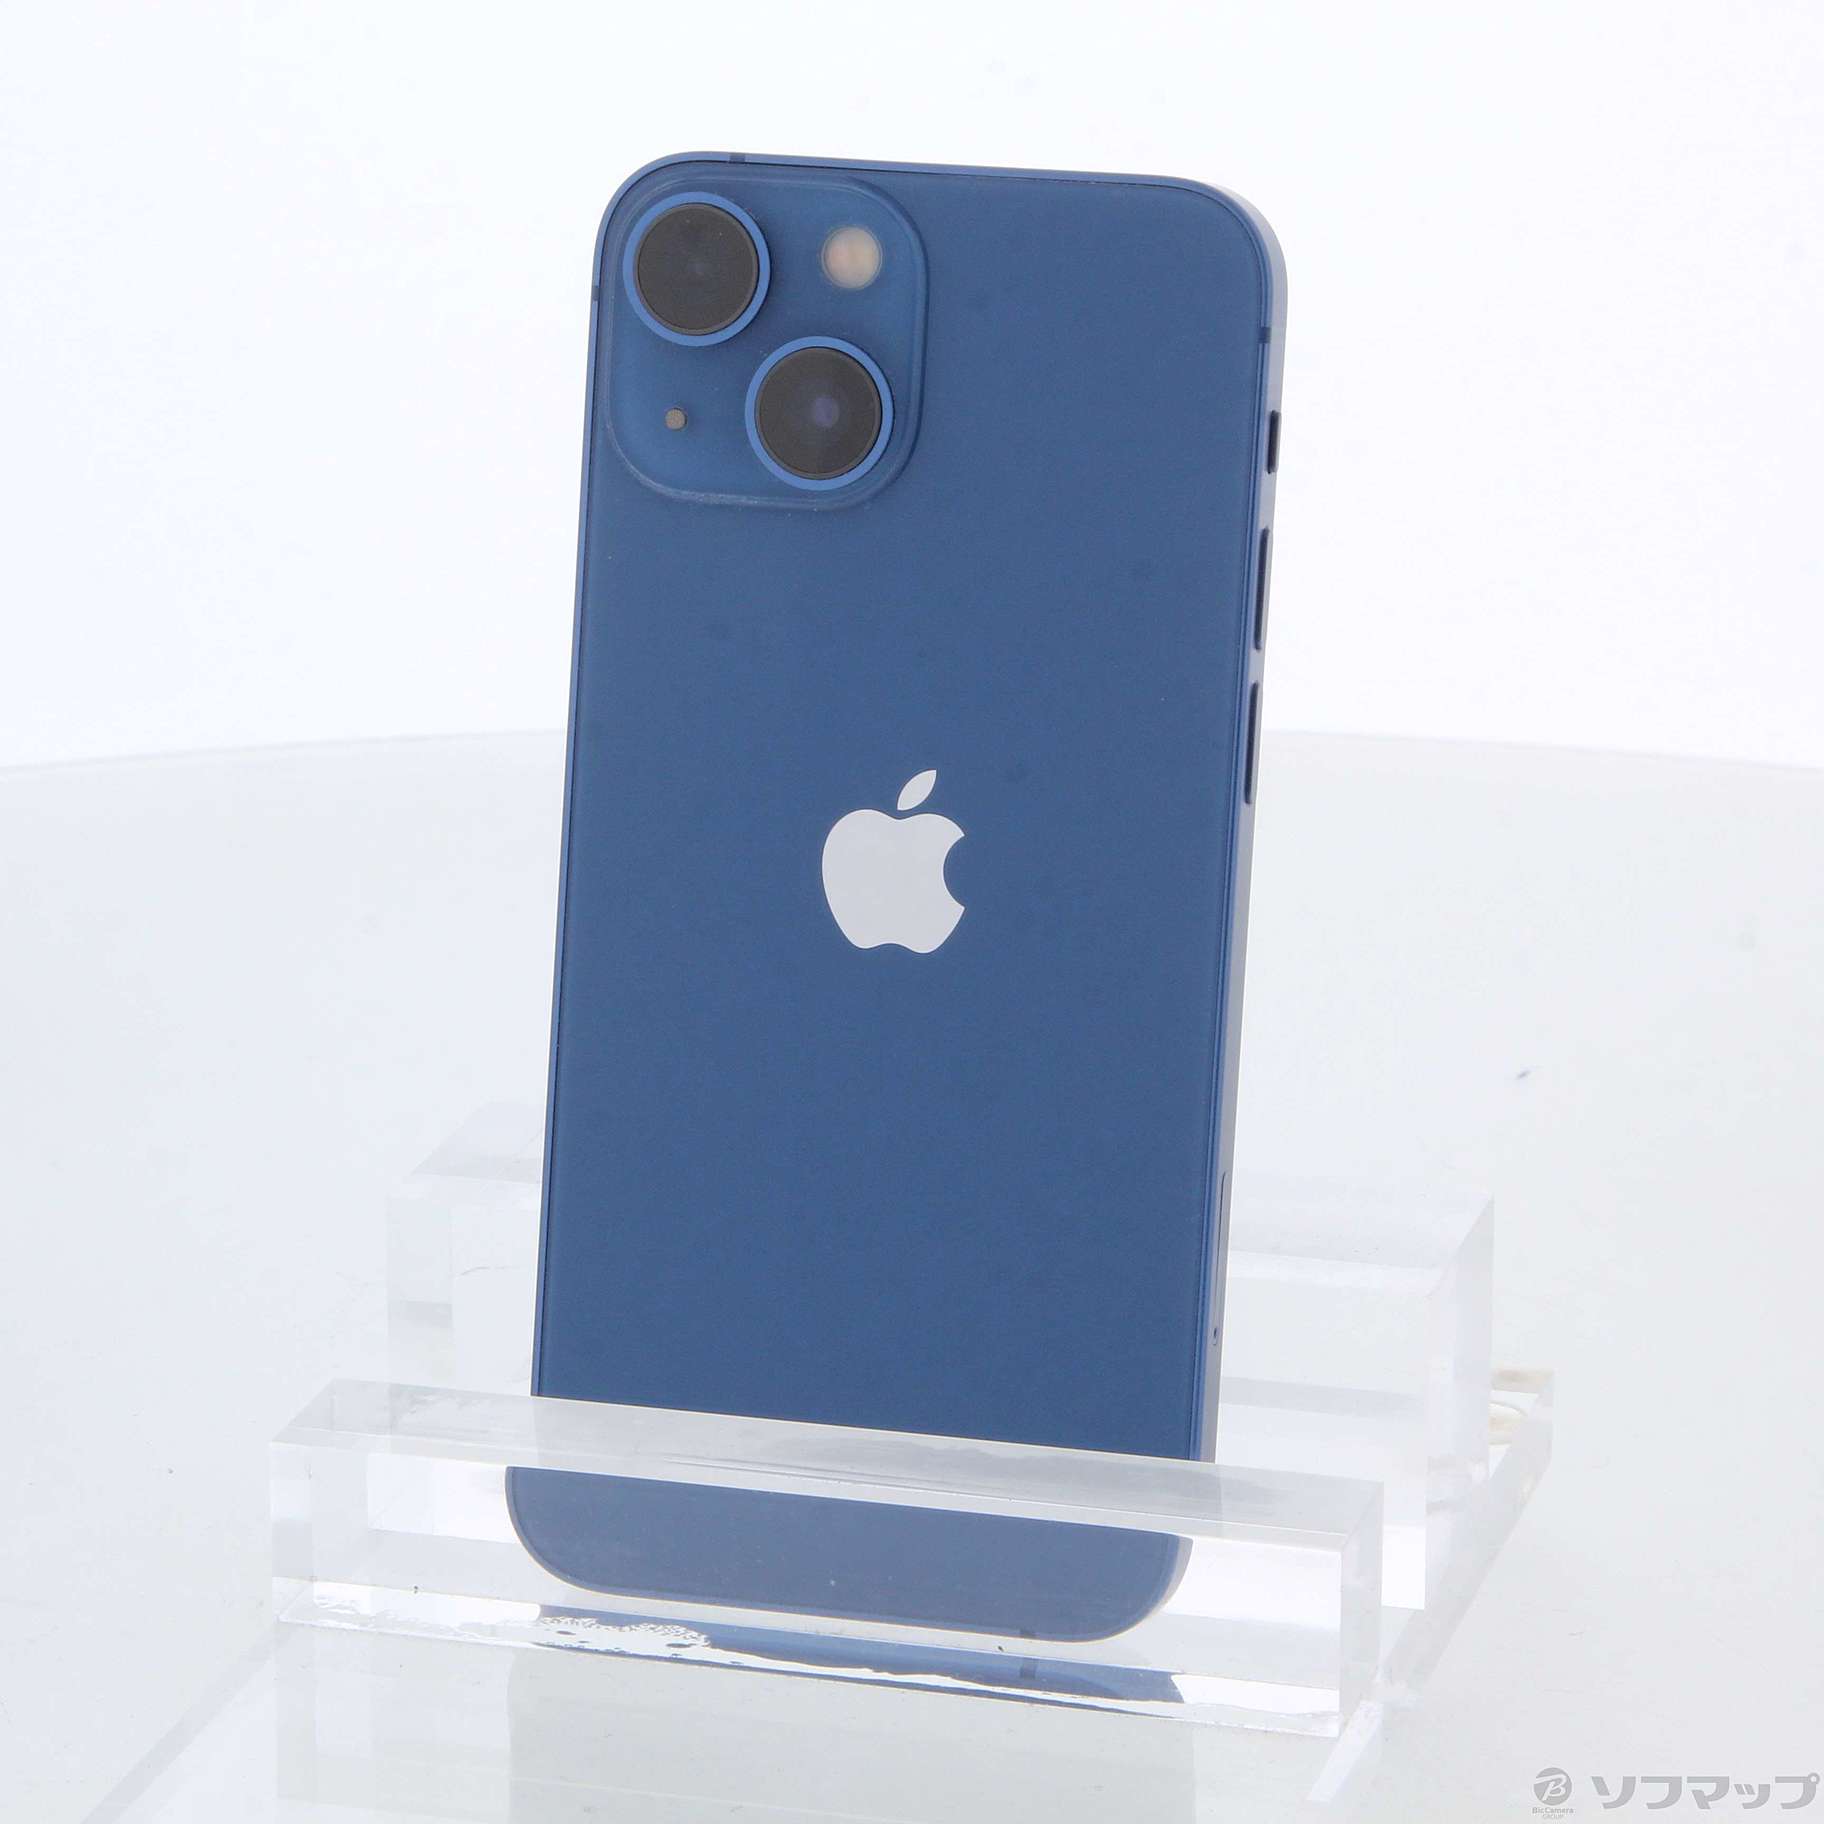 iPhone13 mini 256GB ブルー - スマートフォン本体